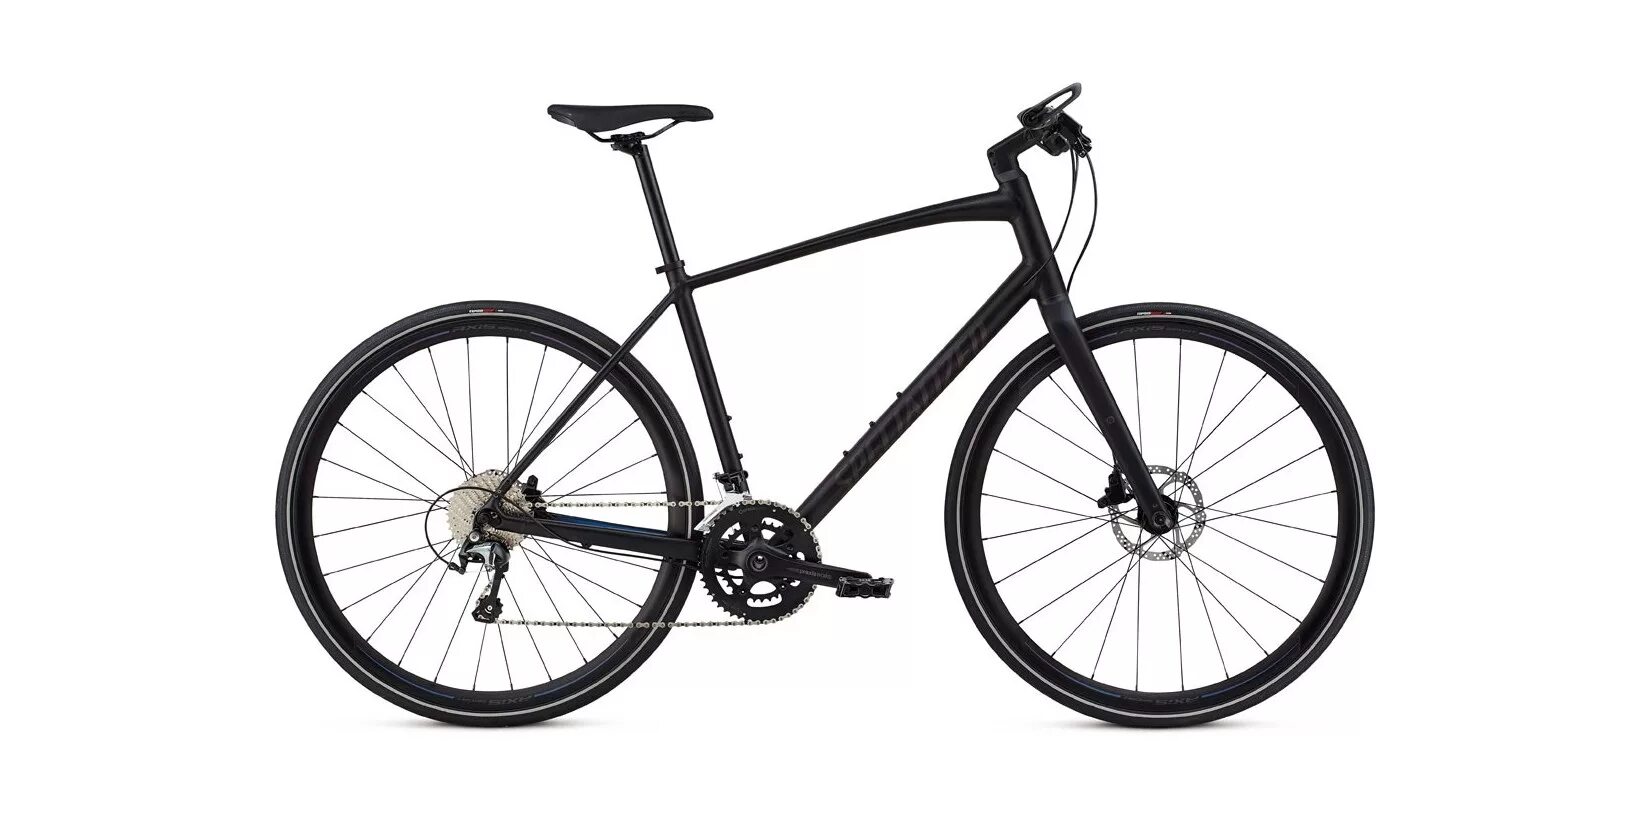 Д 29 купить. Шоссейный гибрид Trek 7.2 FX WSD. Шоссейный велосипед Fuji Bikes SST 2.3. Горный гибрид Fuji Bikes absolute 2.0. Altair al 29 d (2021).